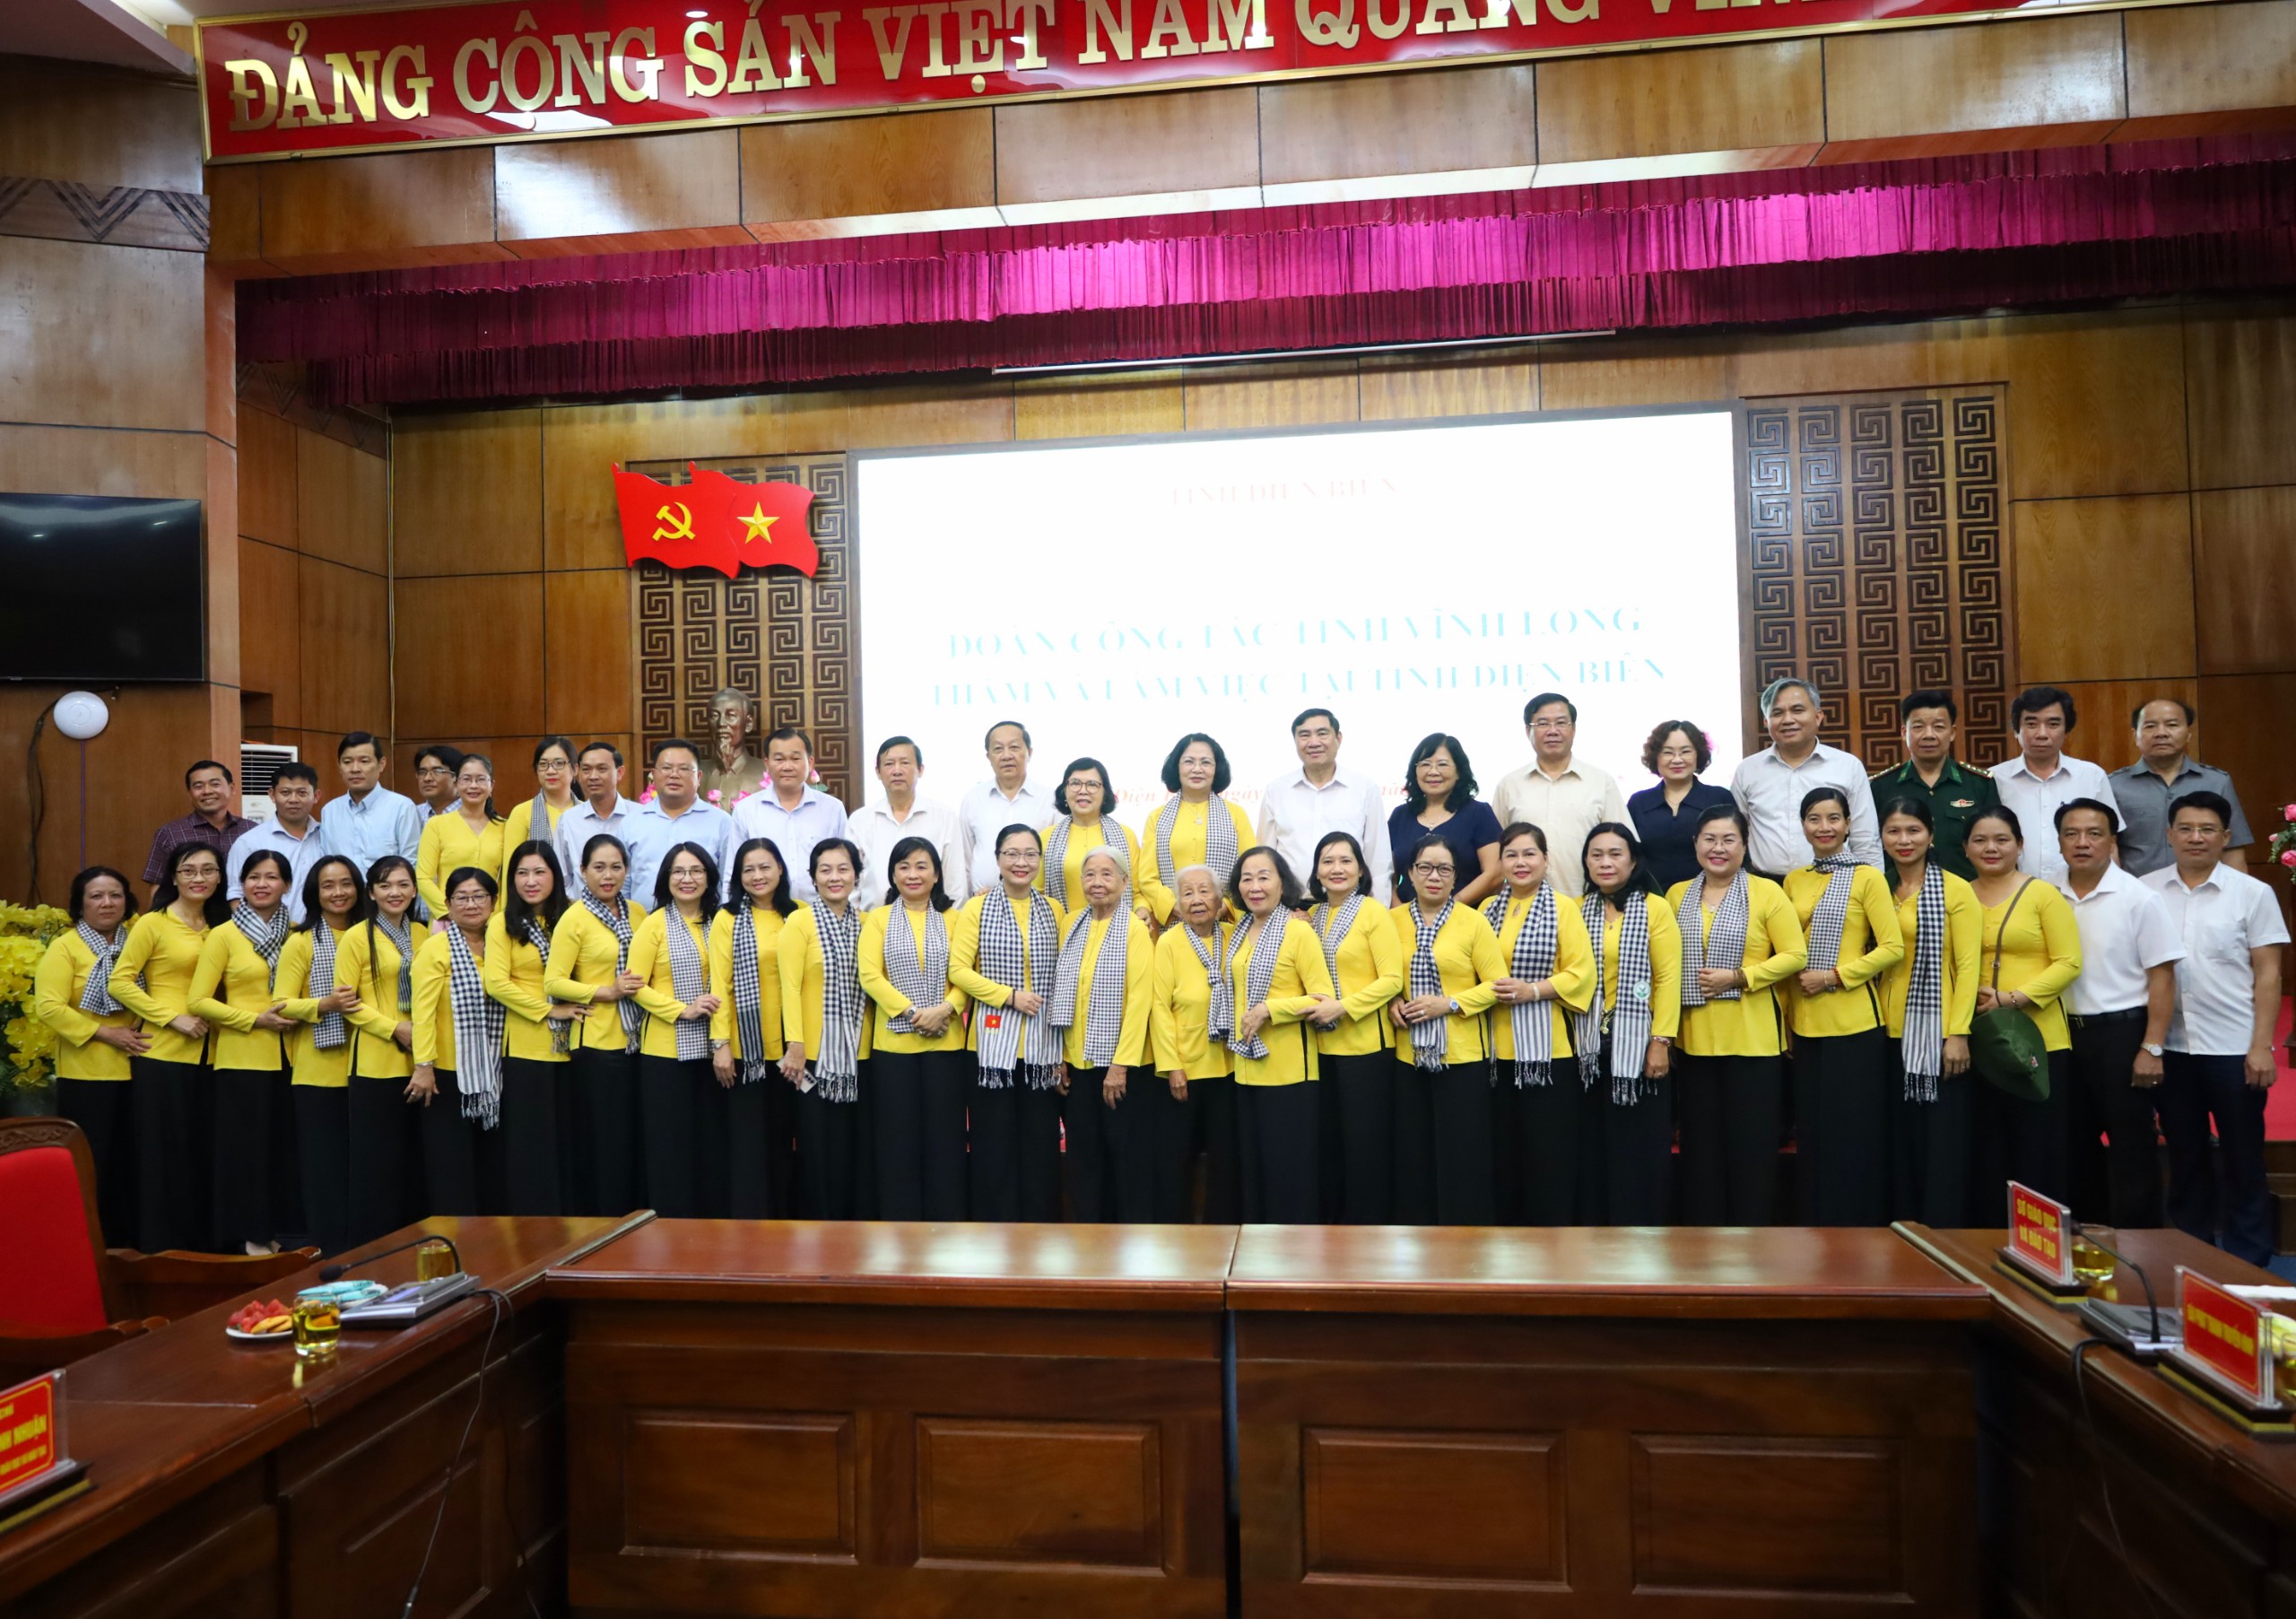 Các đại biểu tỉnh Vĩnh Long và tỉnh Điện Biên chụp hình lưu niệm tại buổi làm việc.